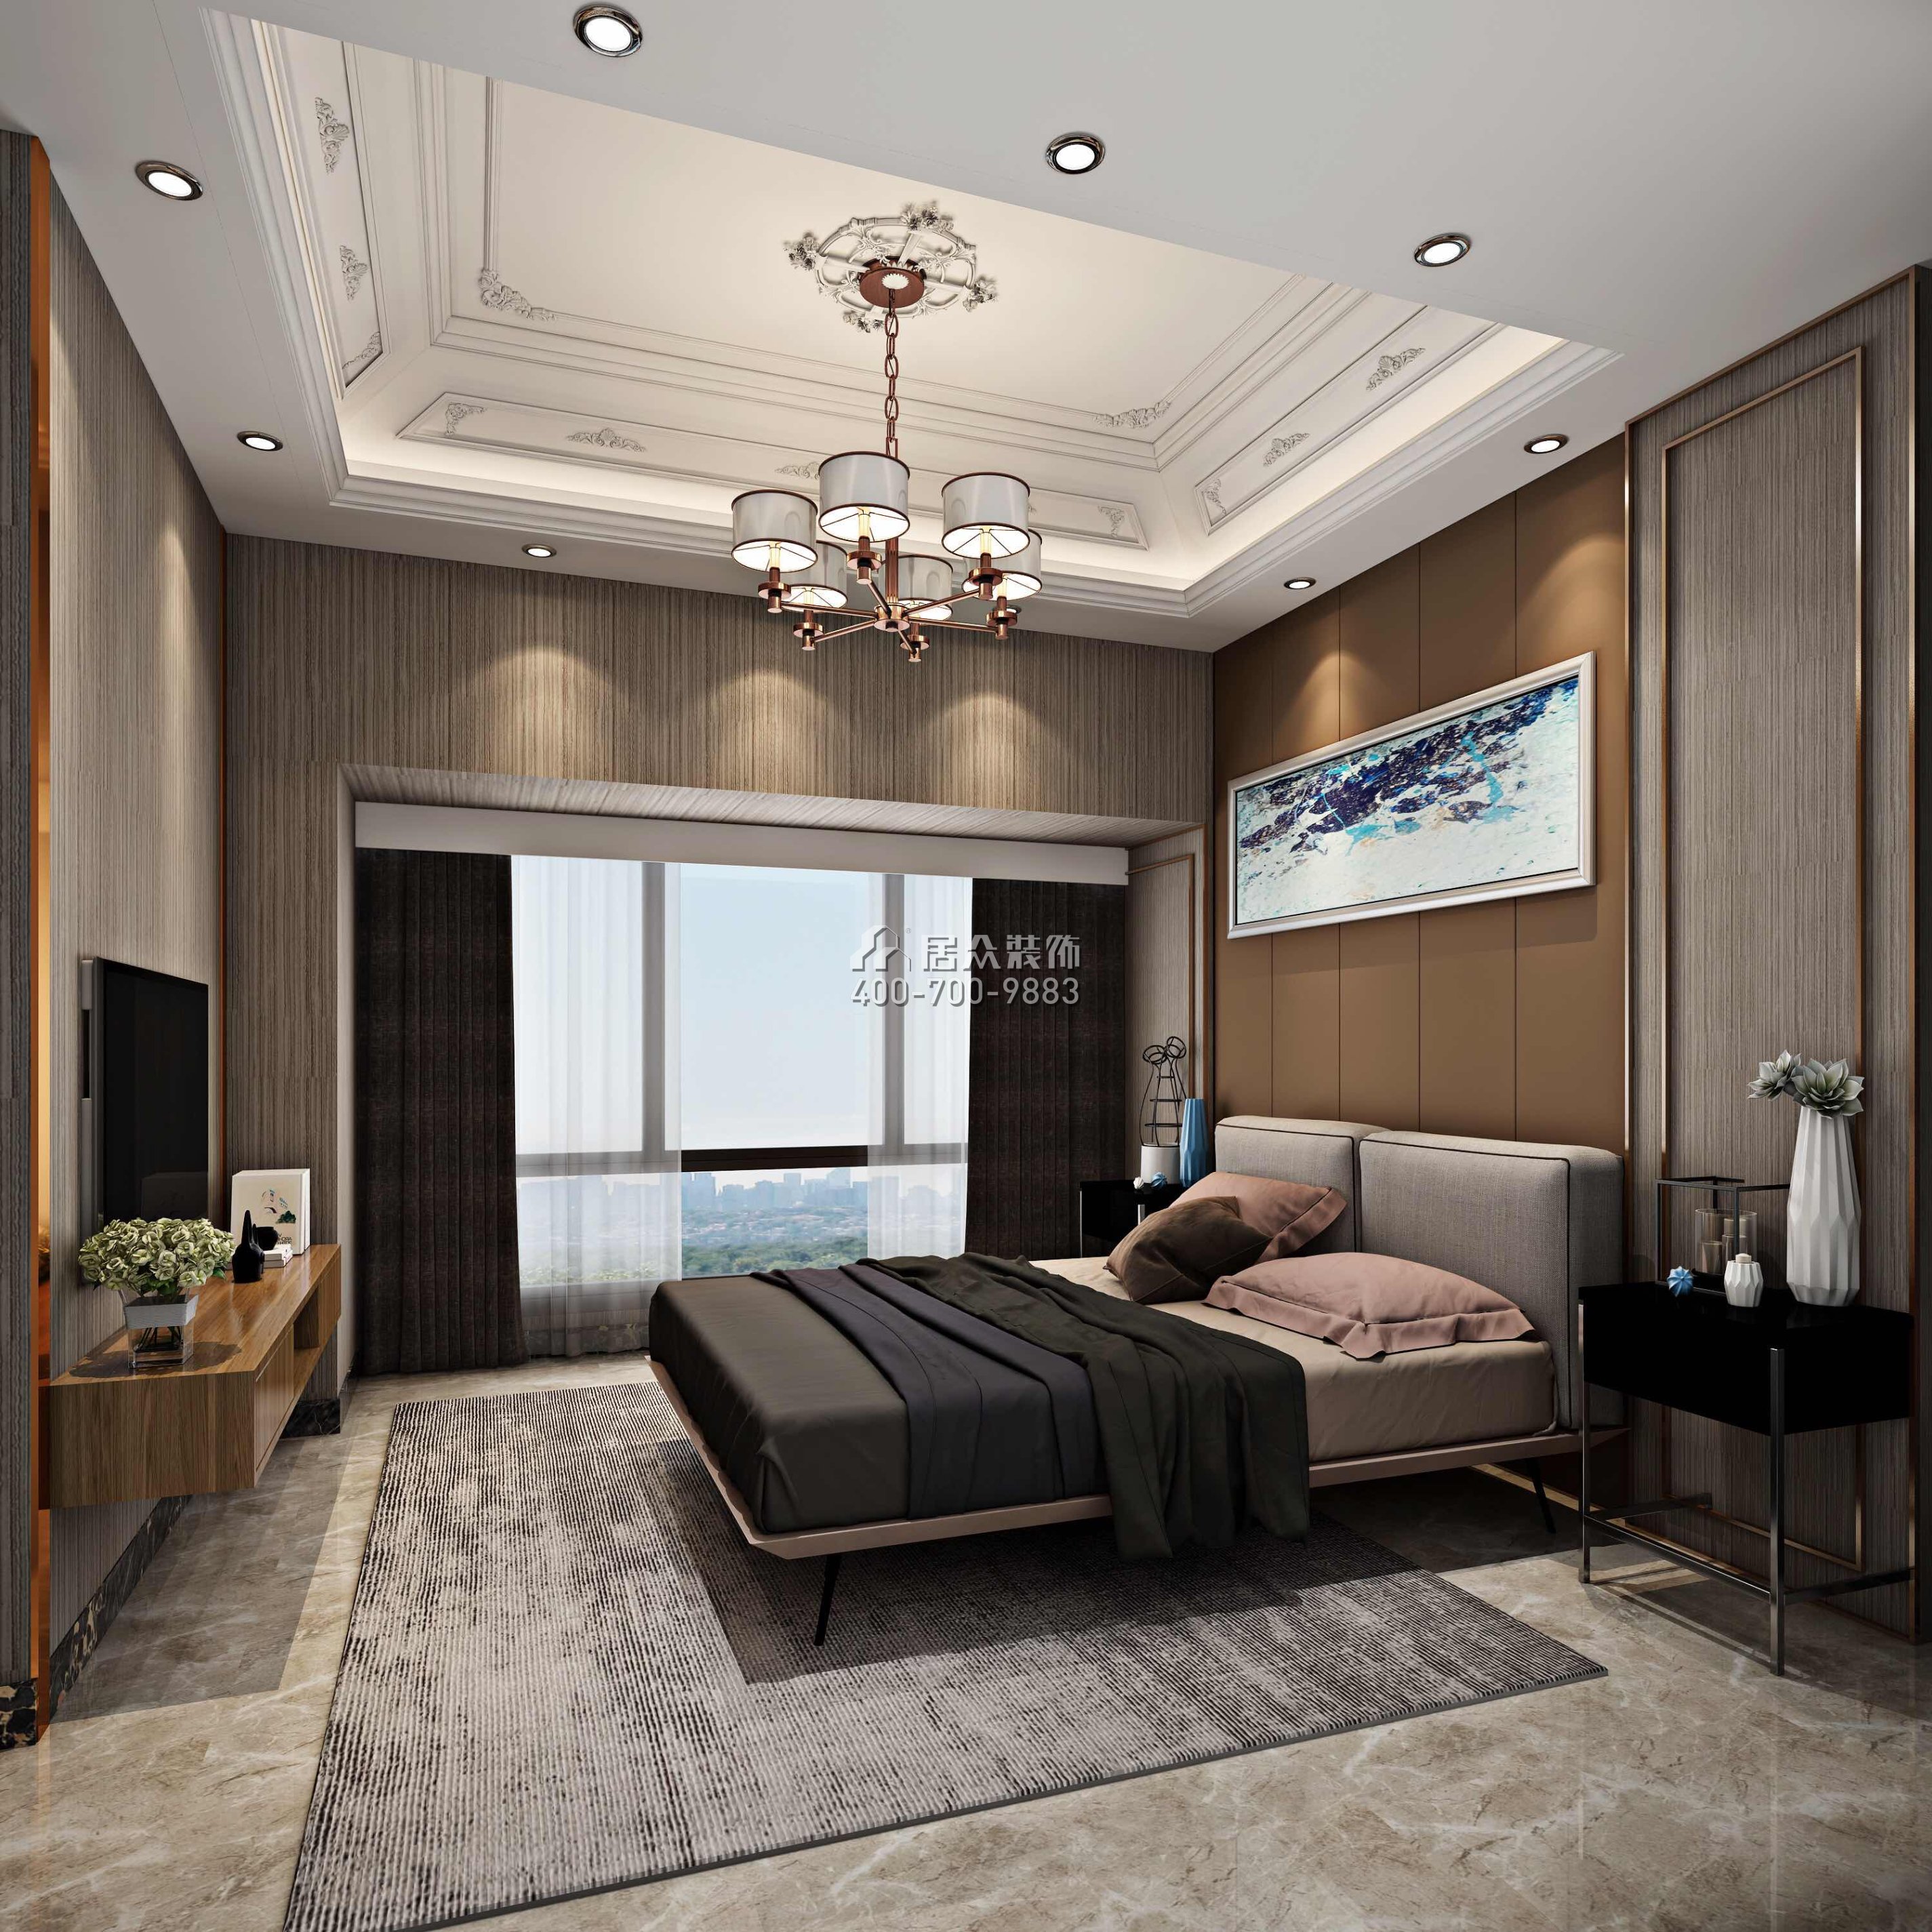 华润城一期200平方米混搭风格平层户型卧室装修效果图